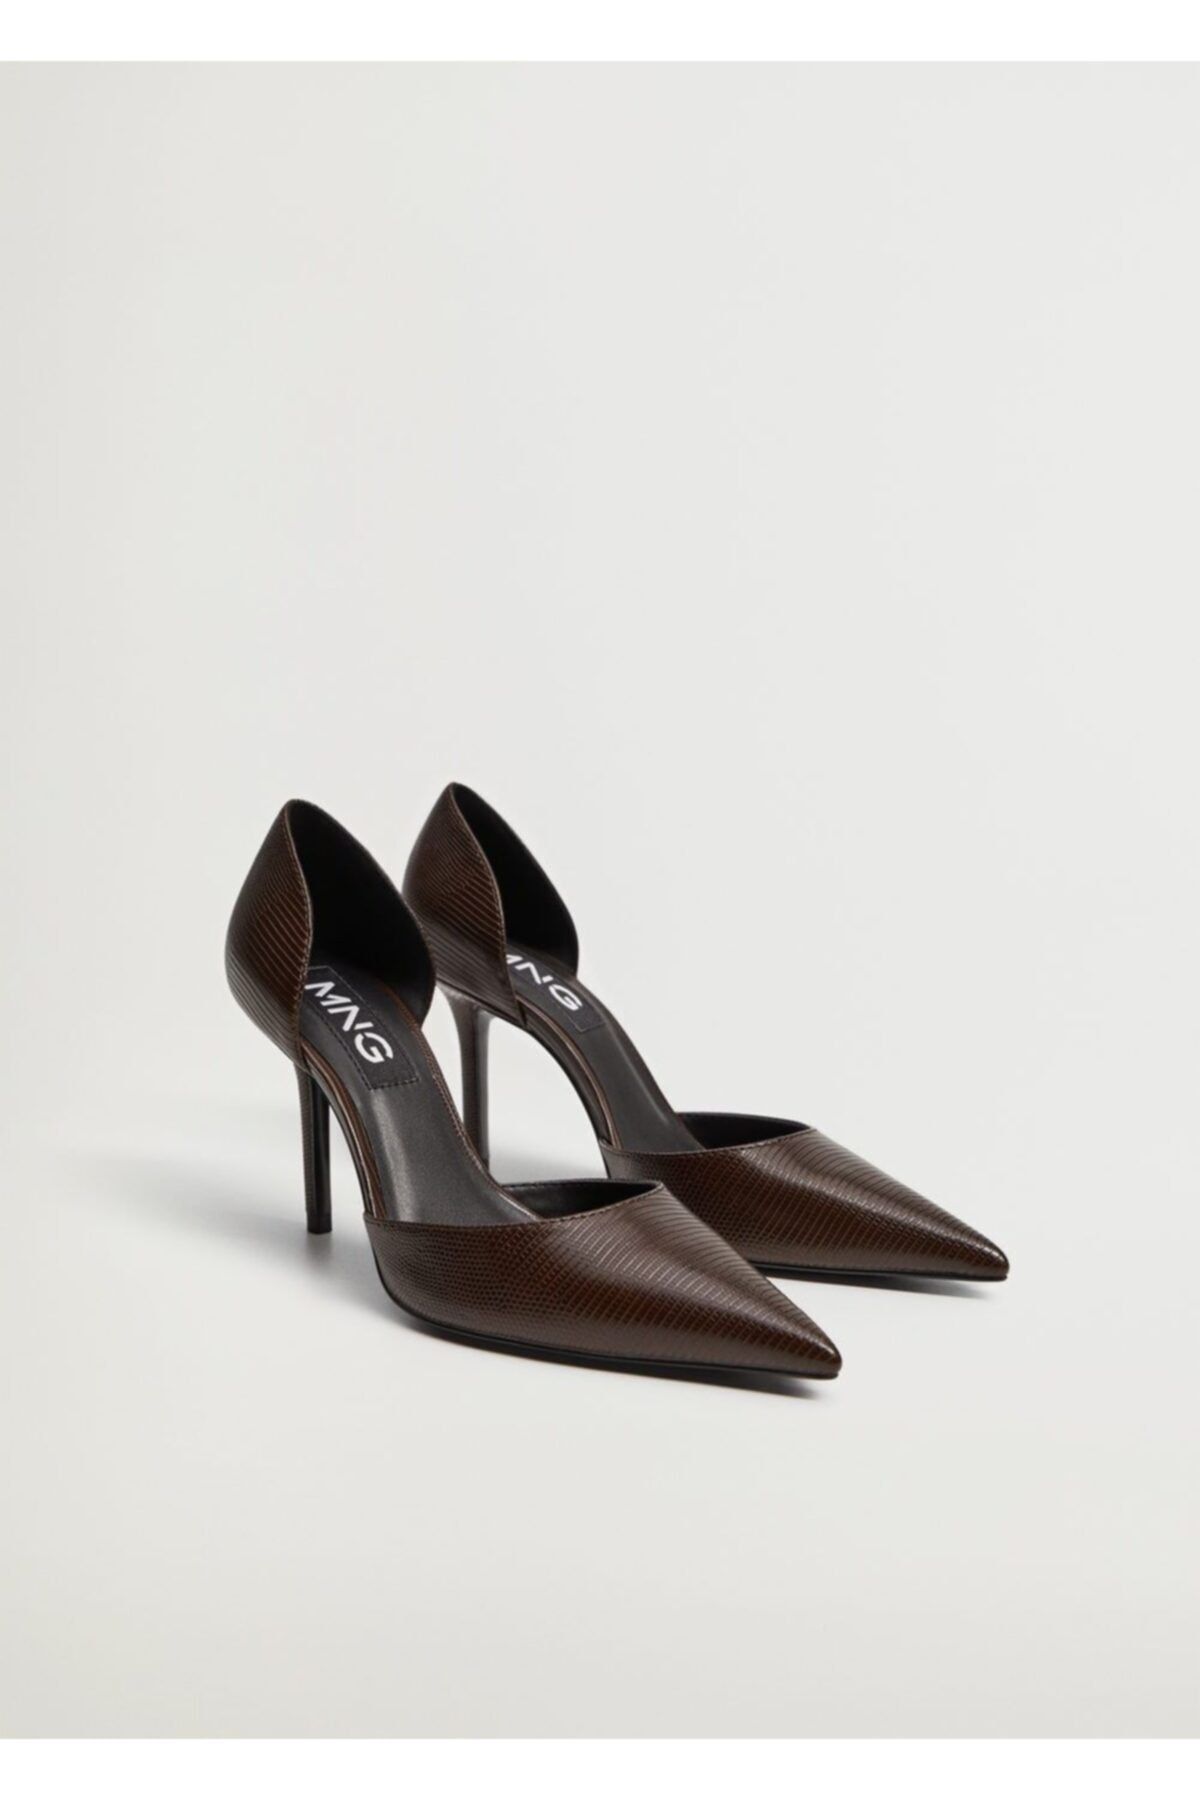 MANGO Kadın Kahverengi Yılan Derisi Desenli Topuklu Ayakkabı